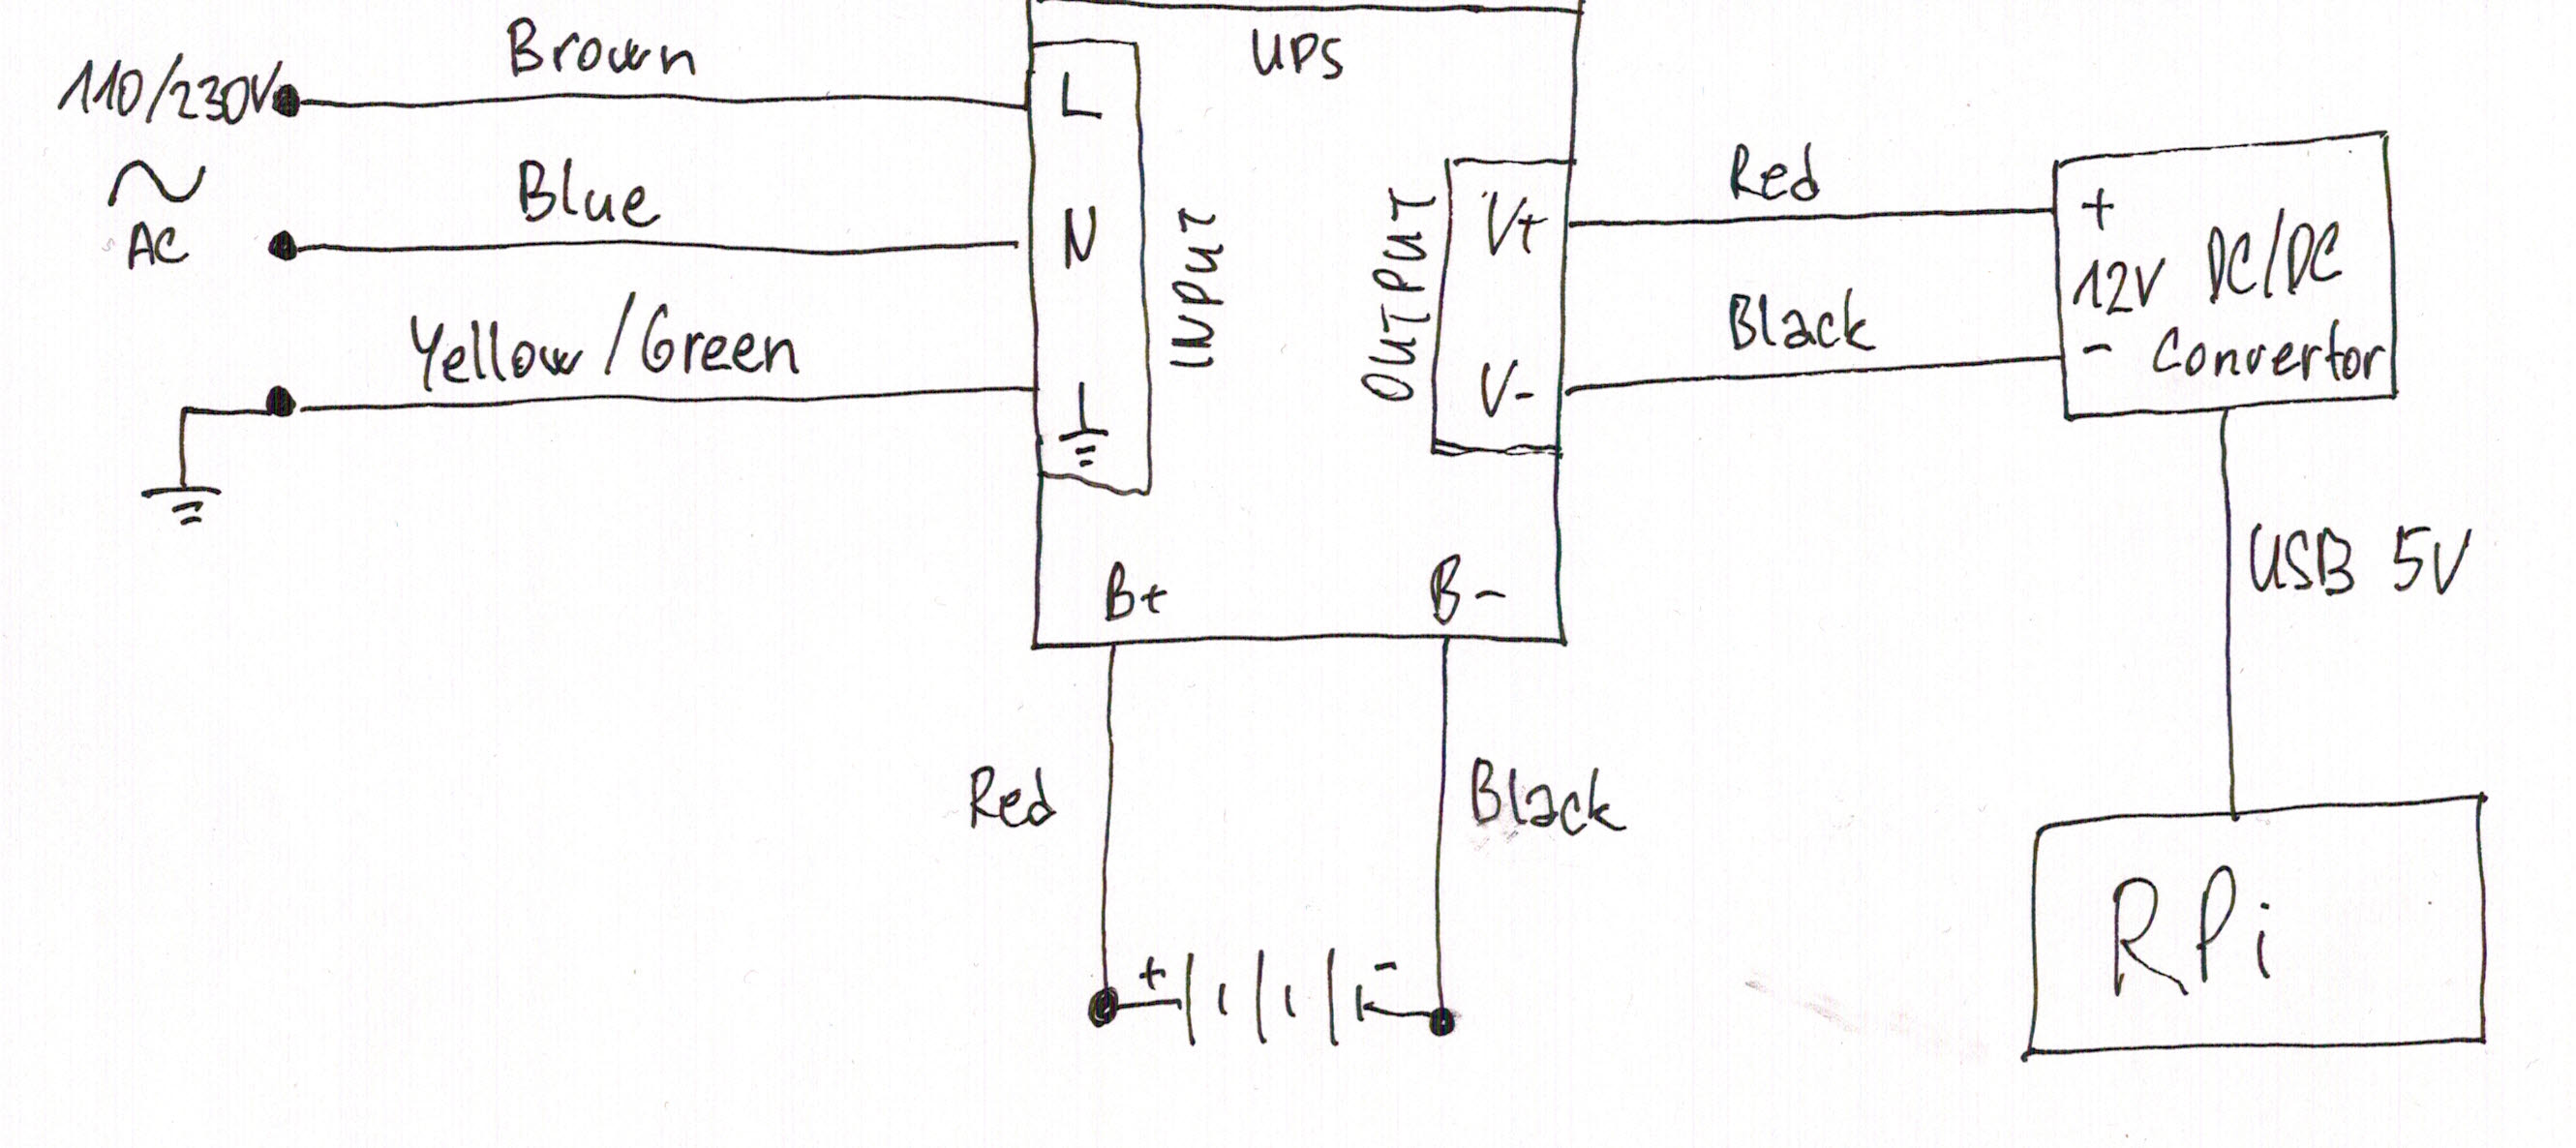 File:Ups-diagram.jpg